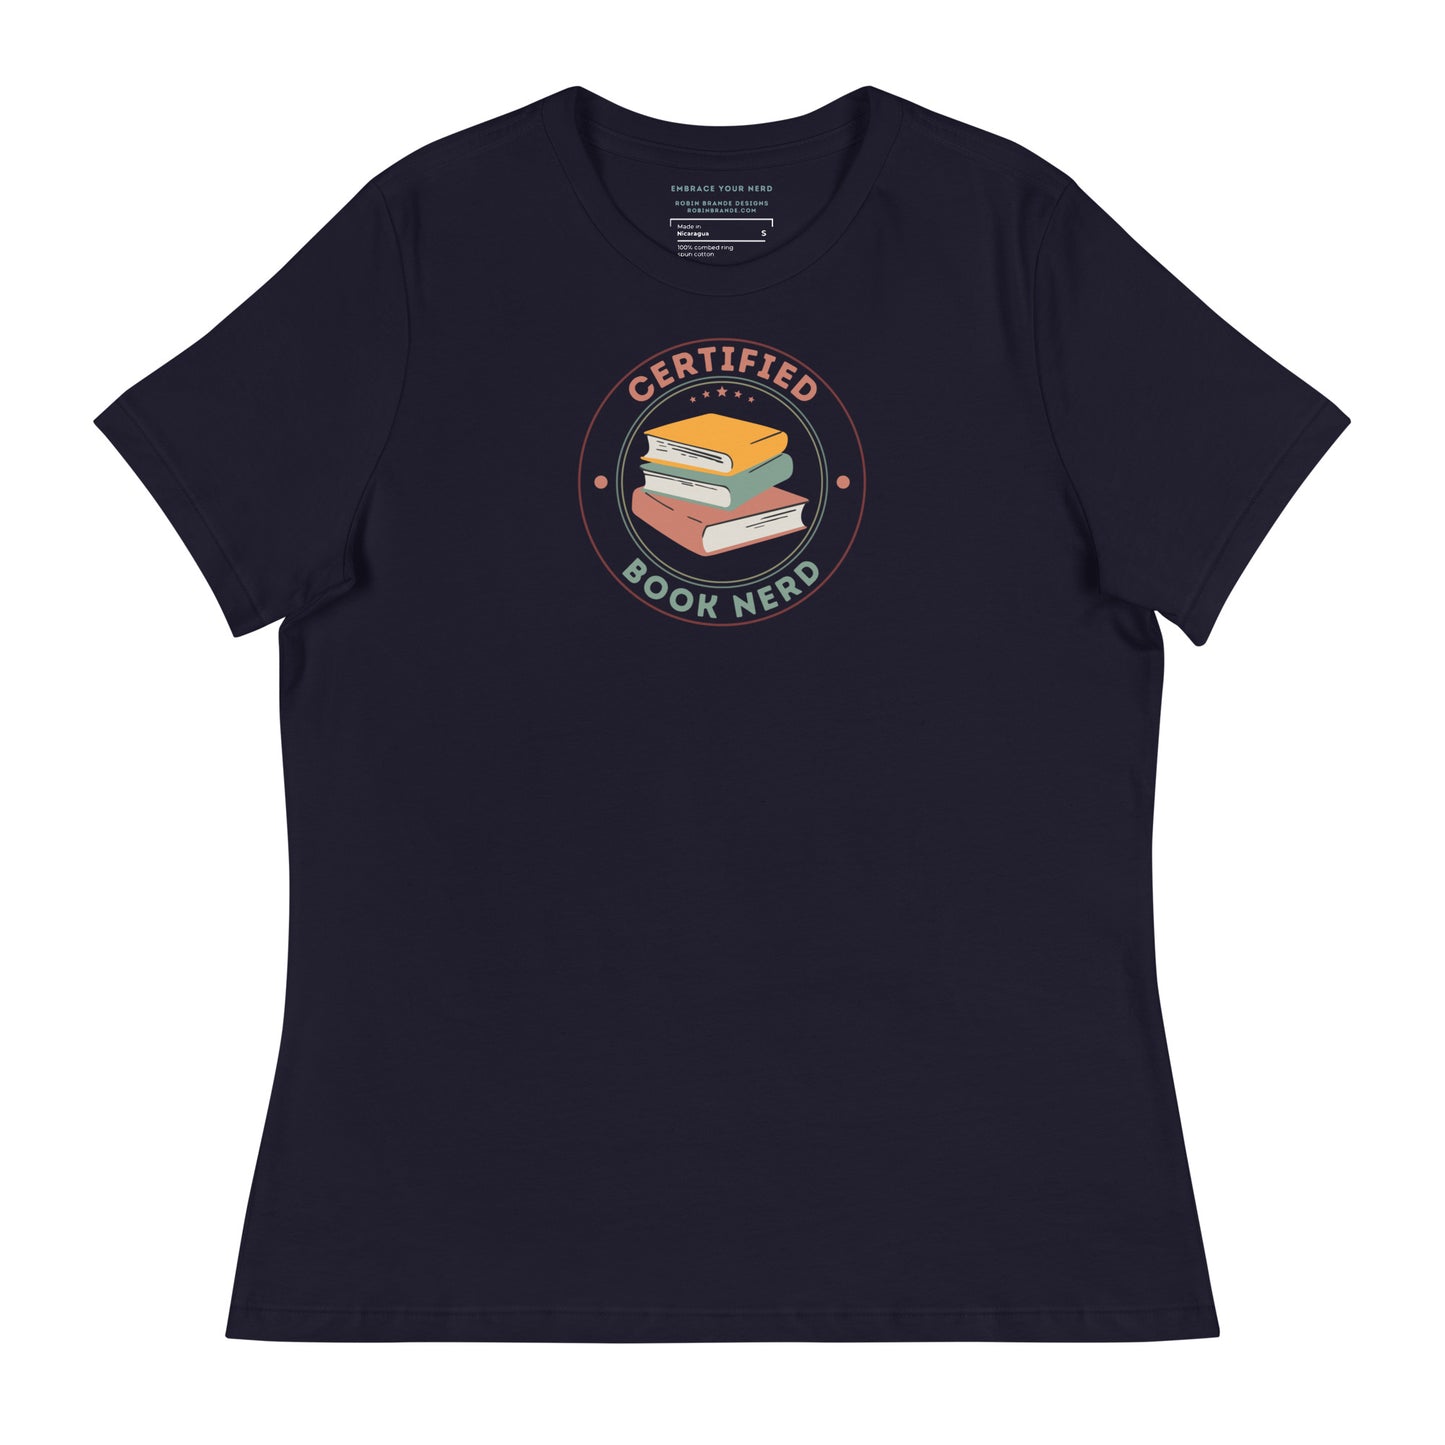 Certified Book Nerd Women's Relaxed T-Shirt